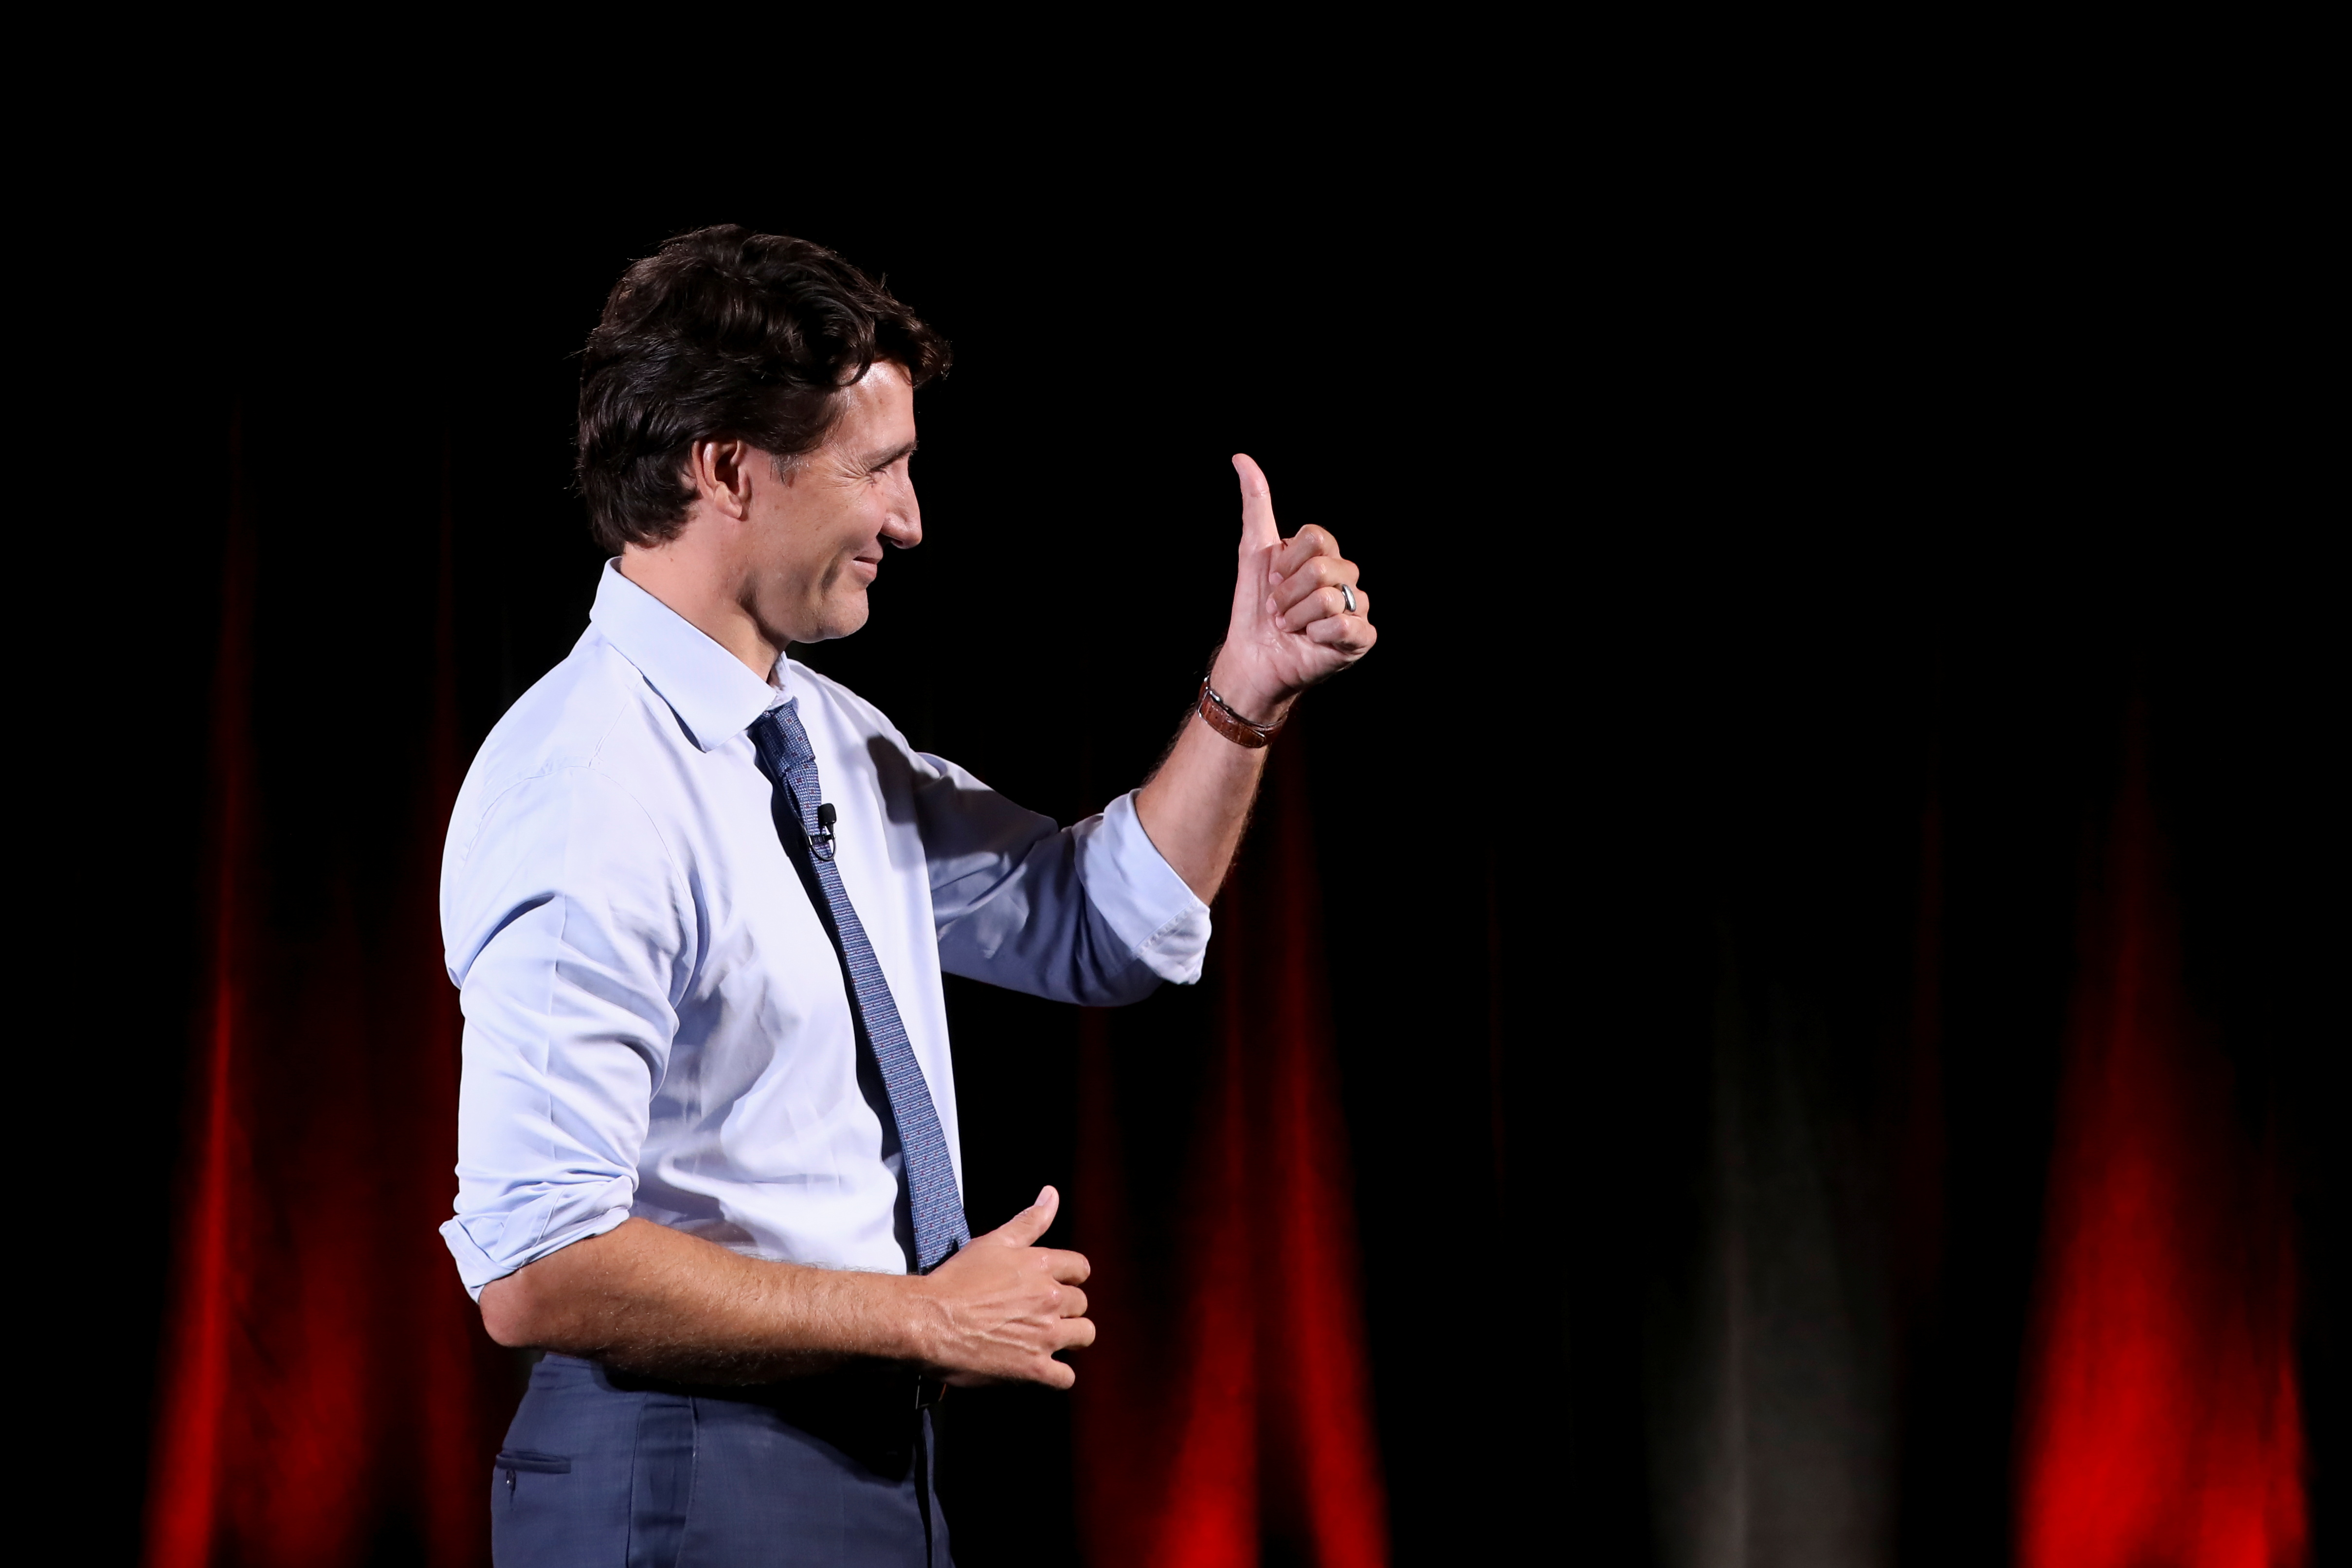 Canada's Liberal PM Trudeau campaigns in Toronto